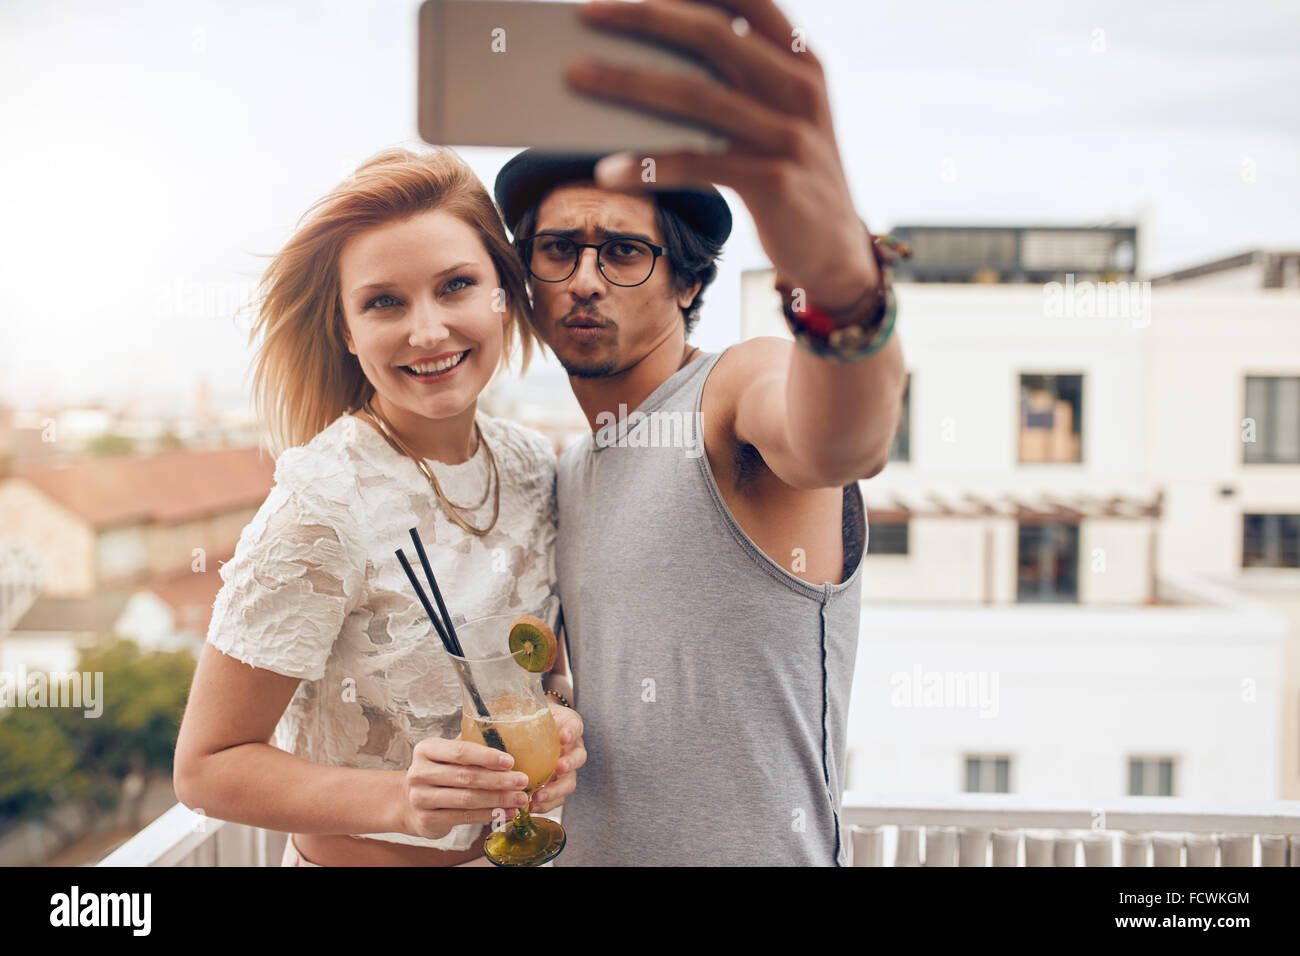 Coppia giovane tenendo autoritratto con smart phone durante una festa. Giovane uomo e donna prendendo selfie al partito sul tetto. Appendere o Foto Stock